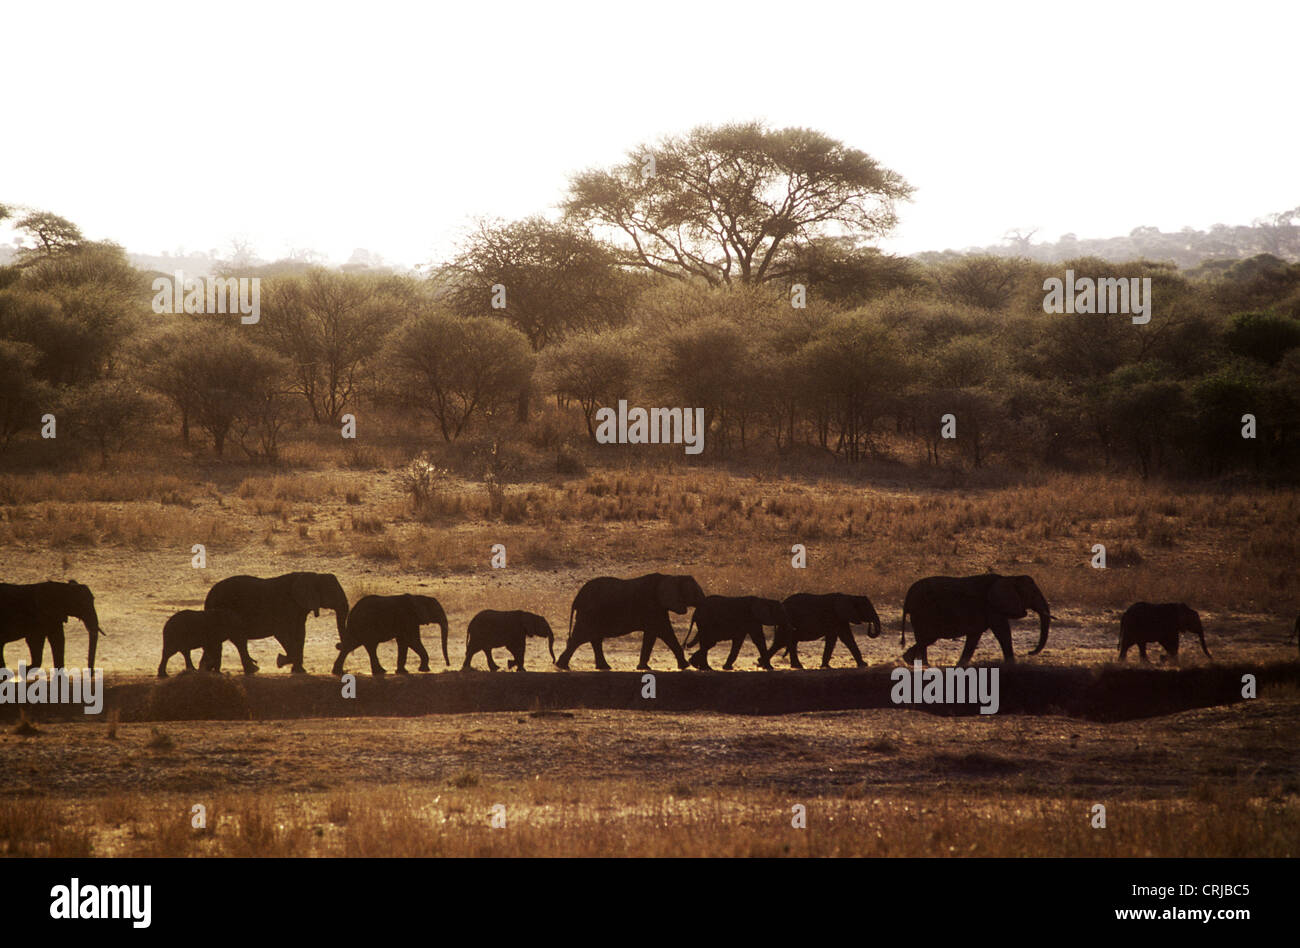 Elefanten in der Linie Silhouette Wandern in Richtung Wasser wirbeln Staub, wie sie in Richtung Wasser im Tarangire Nationalpark Tansania Fuß Stockfoto